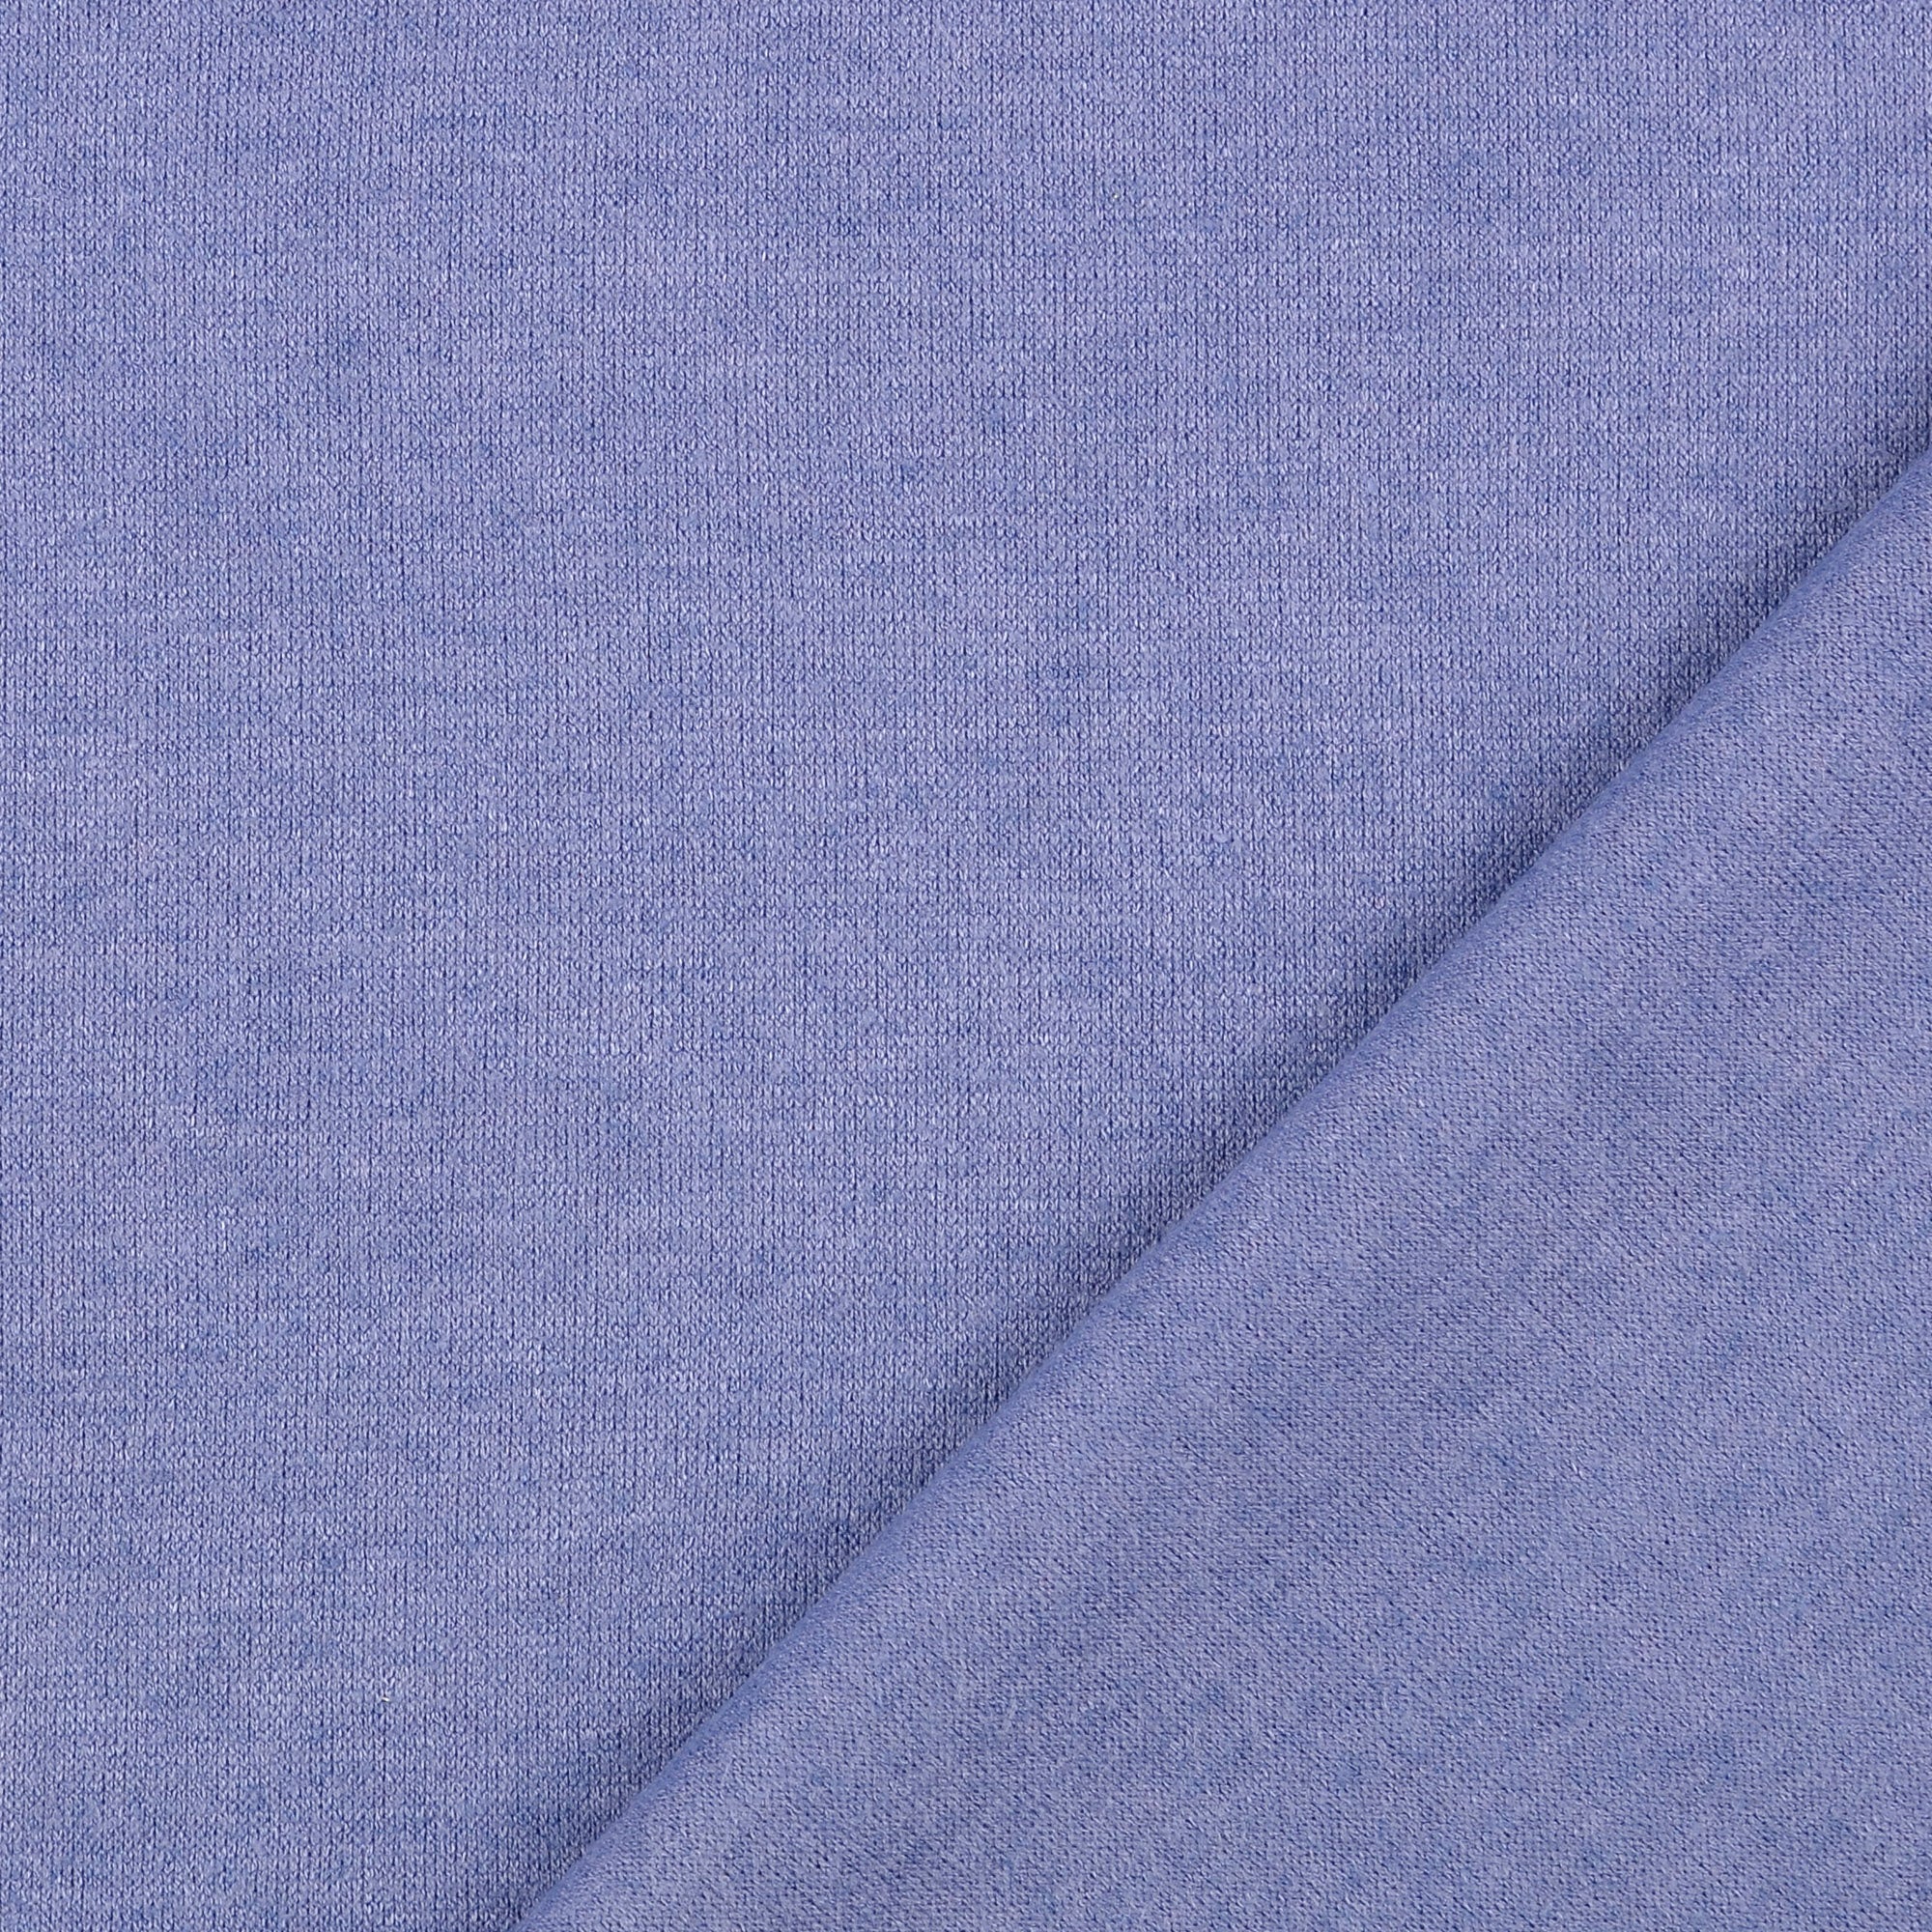 Snug Viscose Blend Sweater Knit in Blue